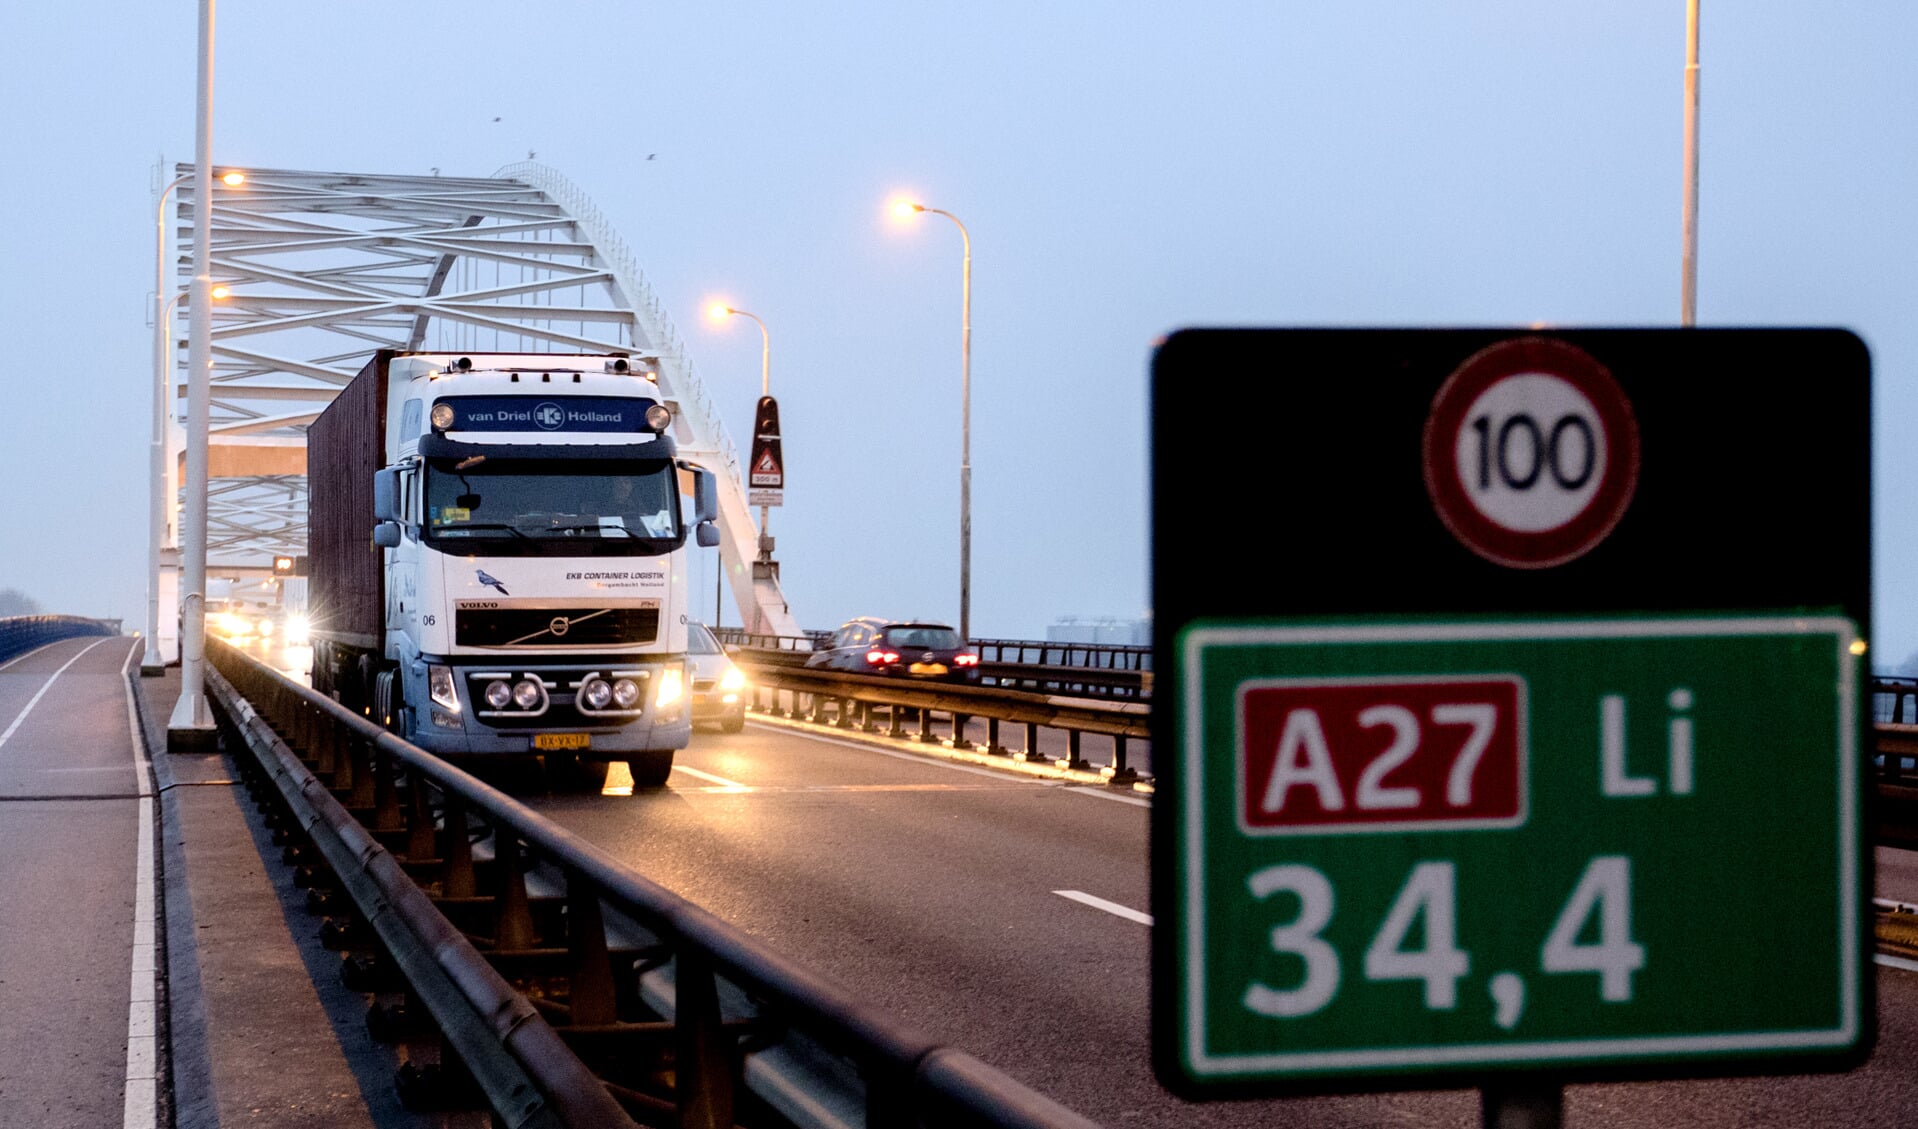  Grote vertraging bij Merwedebrug Gorinchem (A27) , dringend advies: volg de omleidingsroutes 